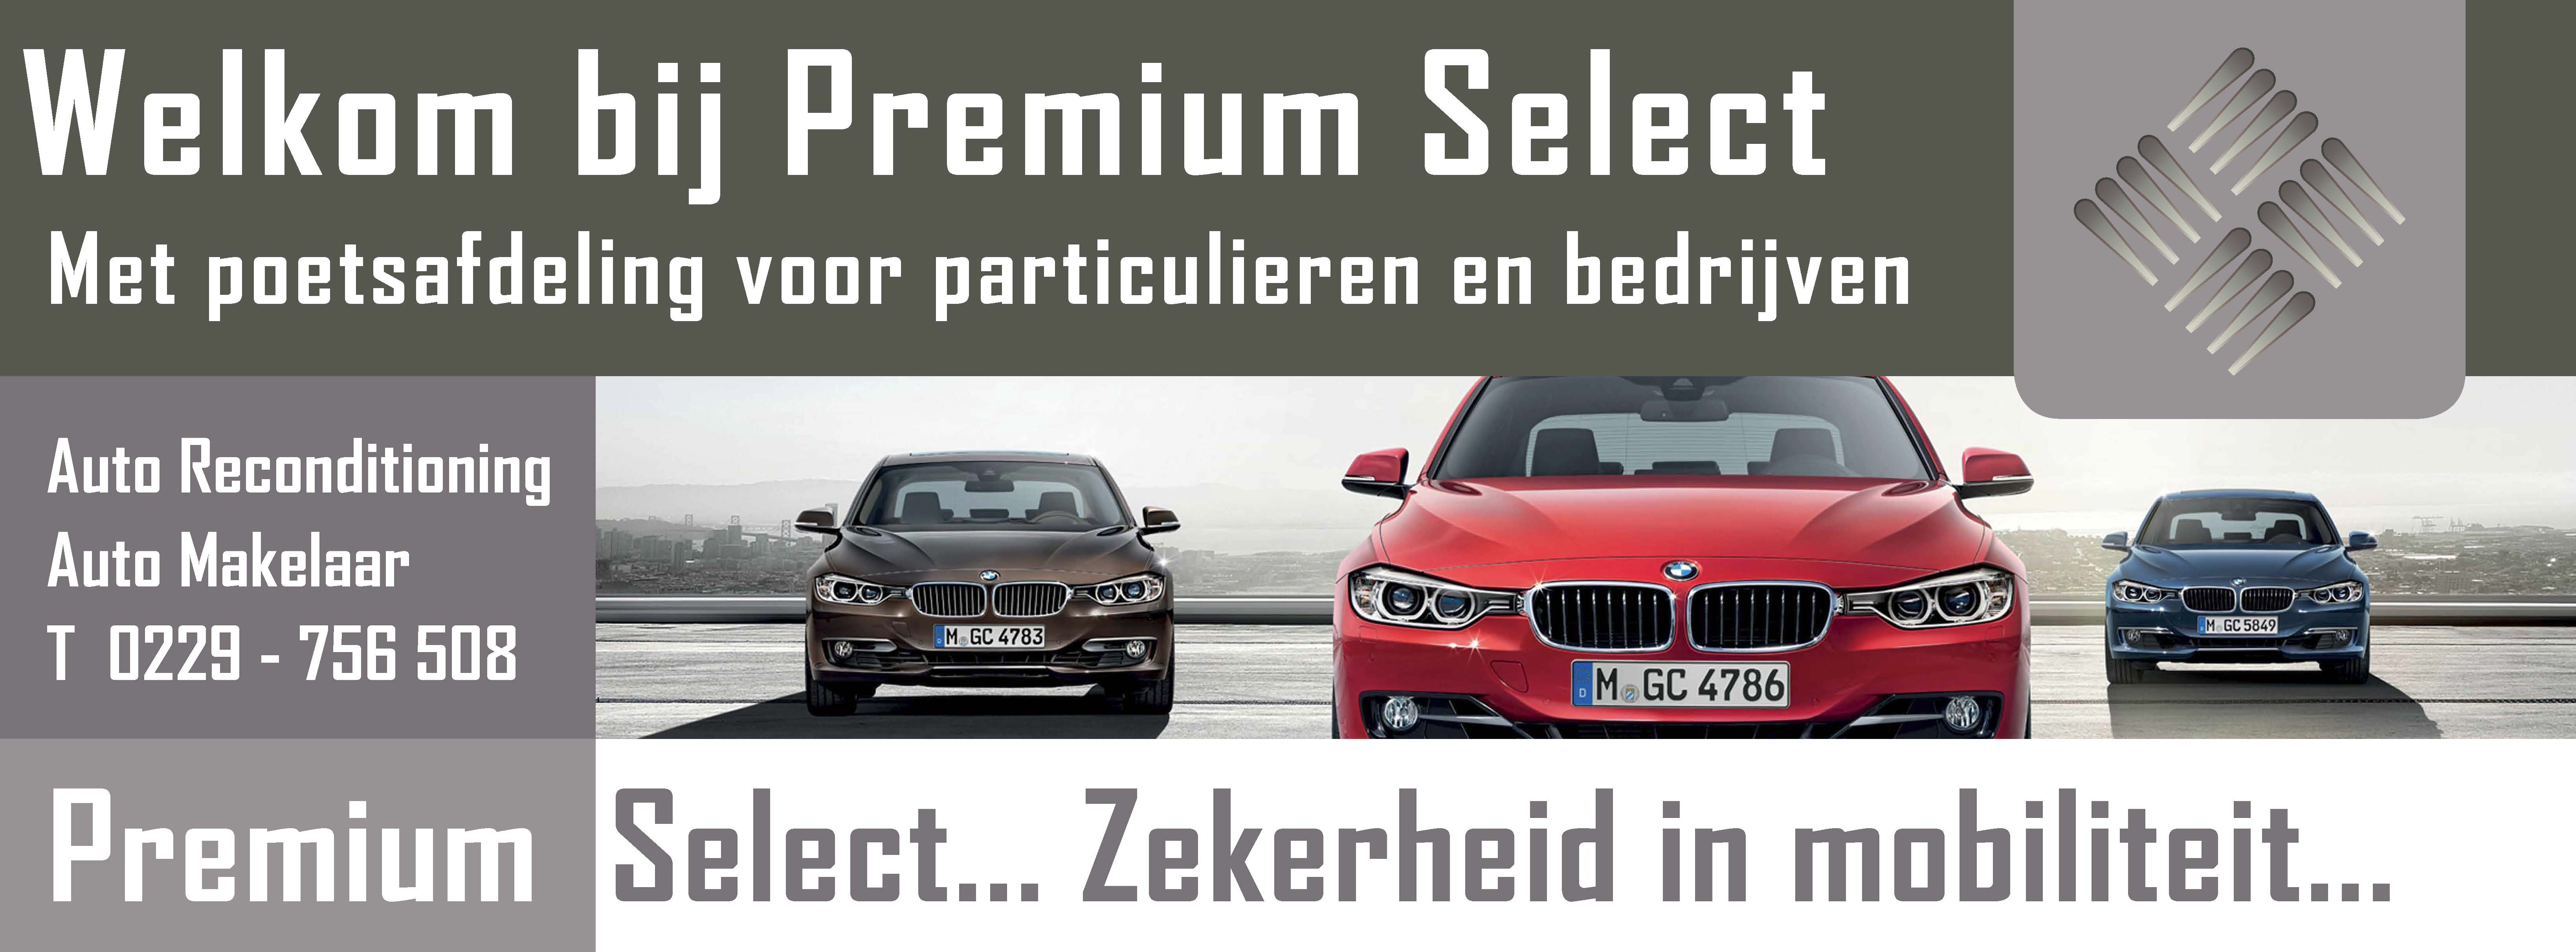 Premium Select BMW verkopen, BMW inkoop en BMW verkoop bmw specialist